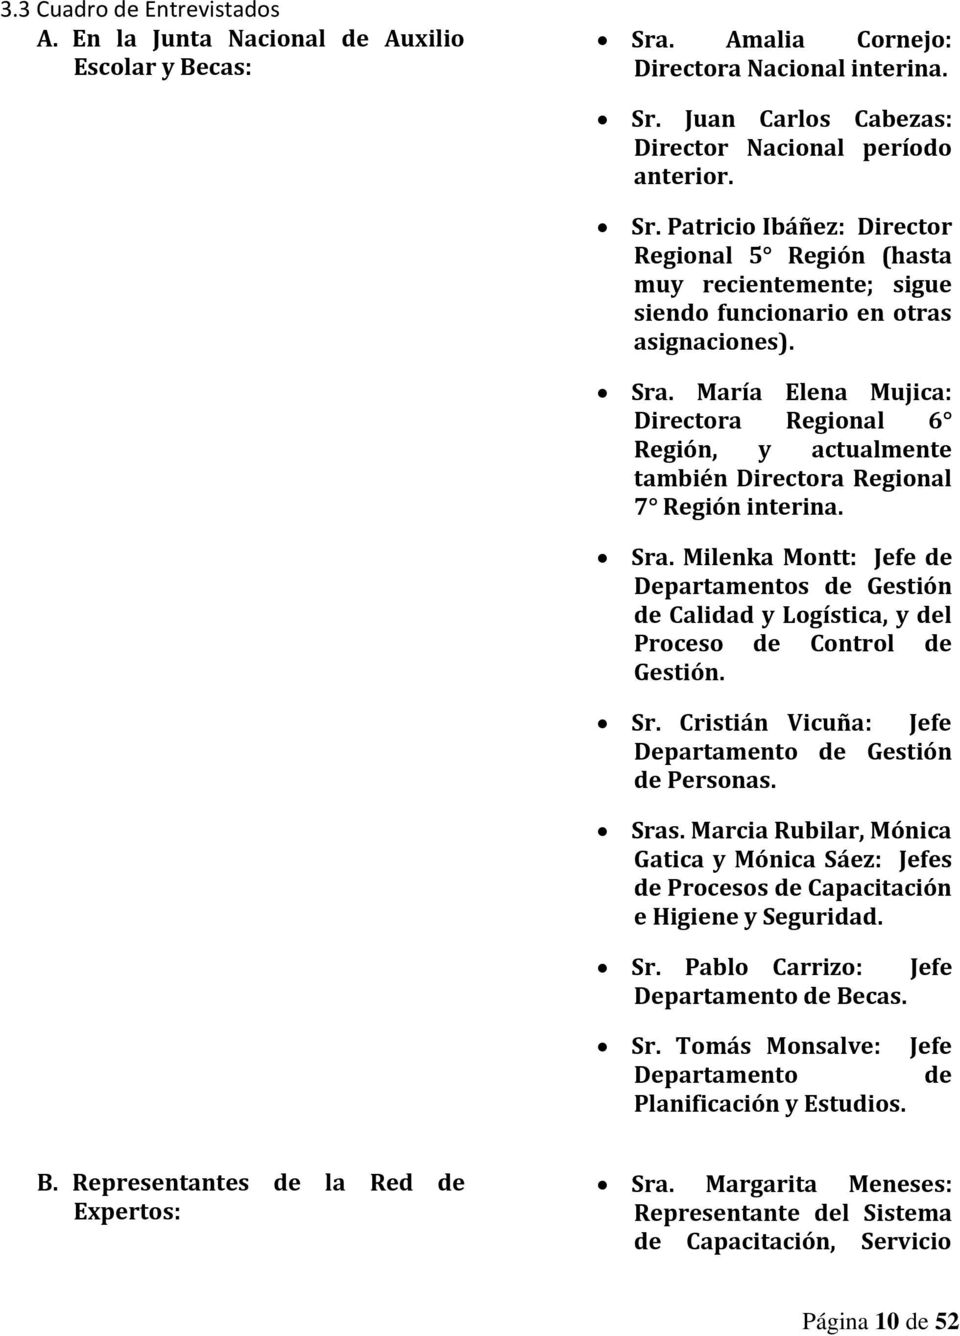 Sra. María Elena Mujica: Directora Regional 6 Región, y actualmente también Directora Regional 7 Región interina. Sra.